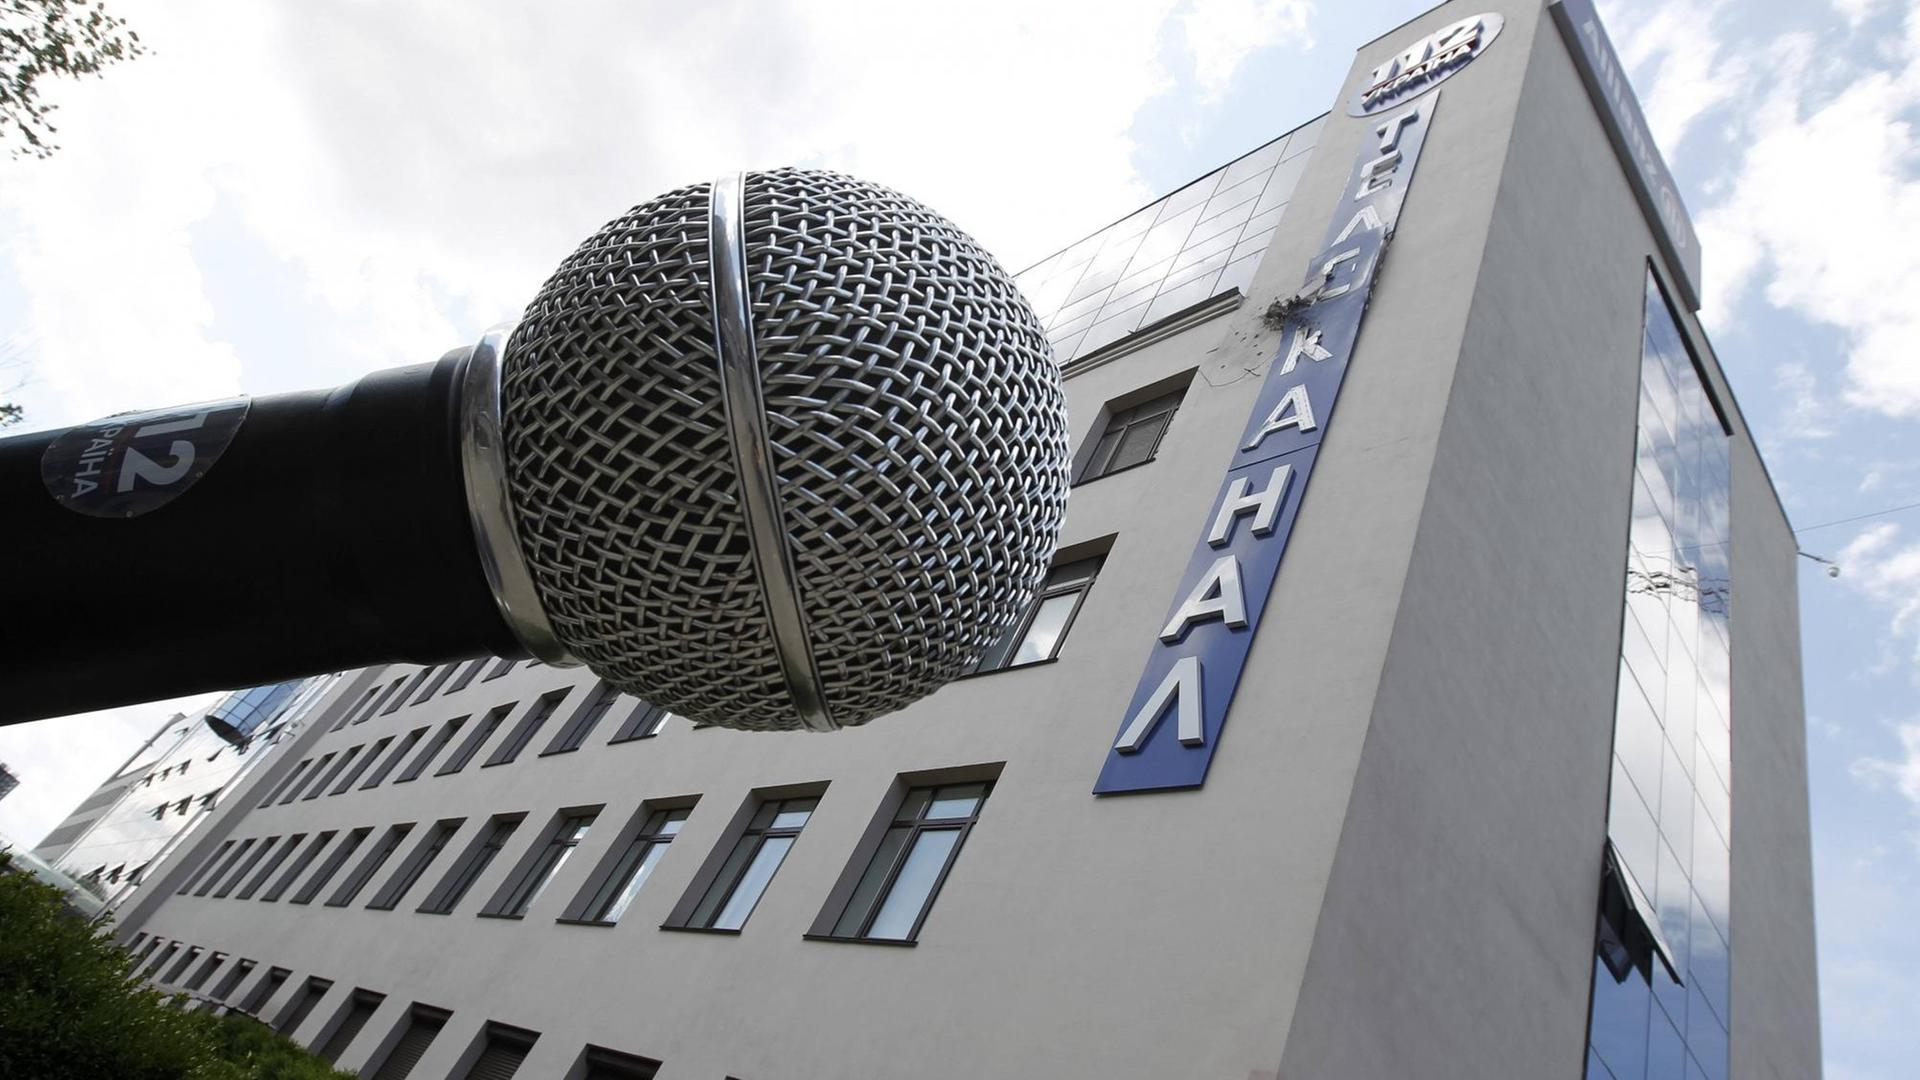 Vor dem Gebäude des ukrainischen Fernsehsenders "112" in Kiew steht ein überdimensionales Mikrofon. Der Schriftzug an der Fassade ist durch einen Angriff zerstört.